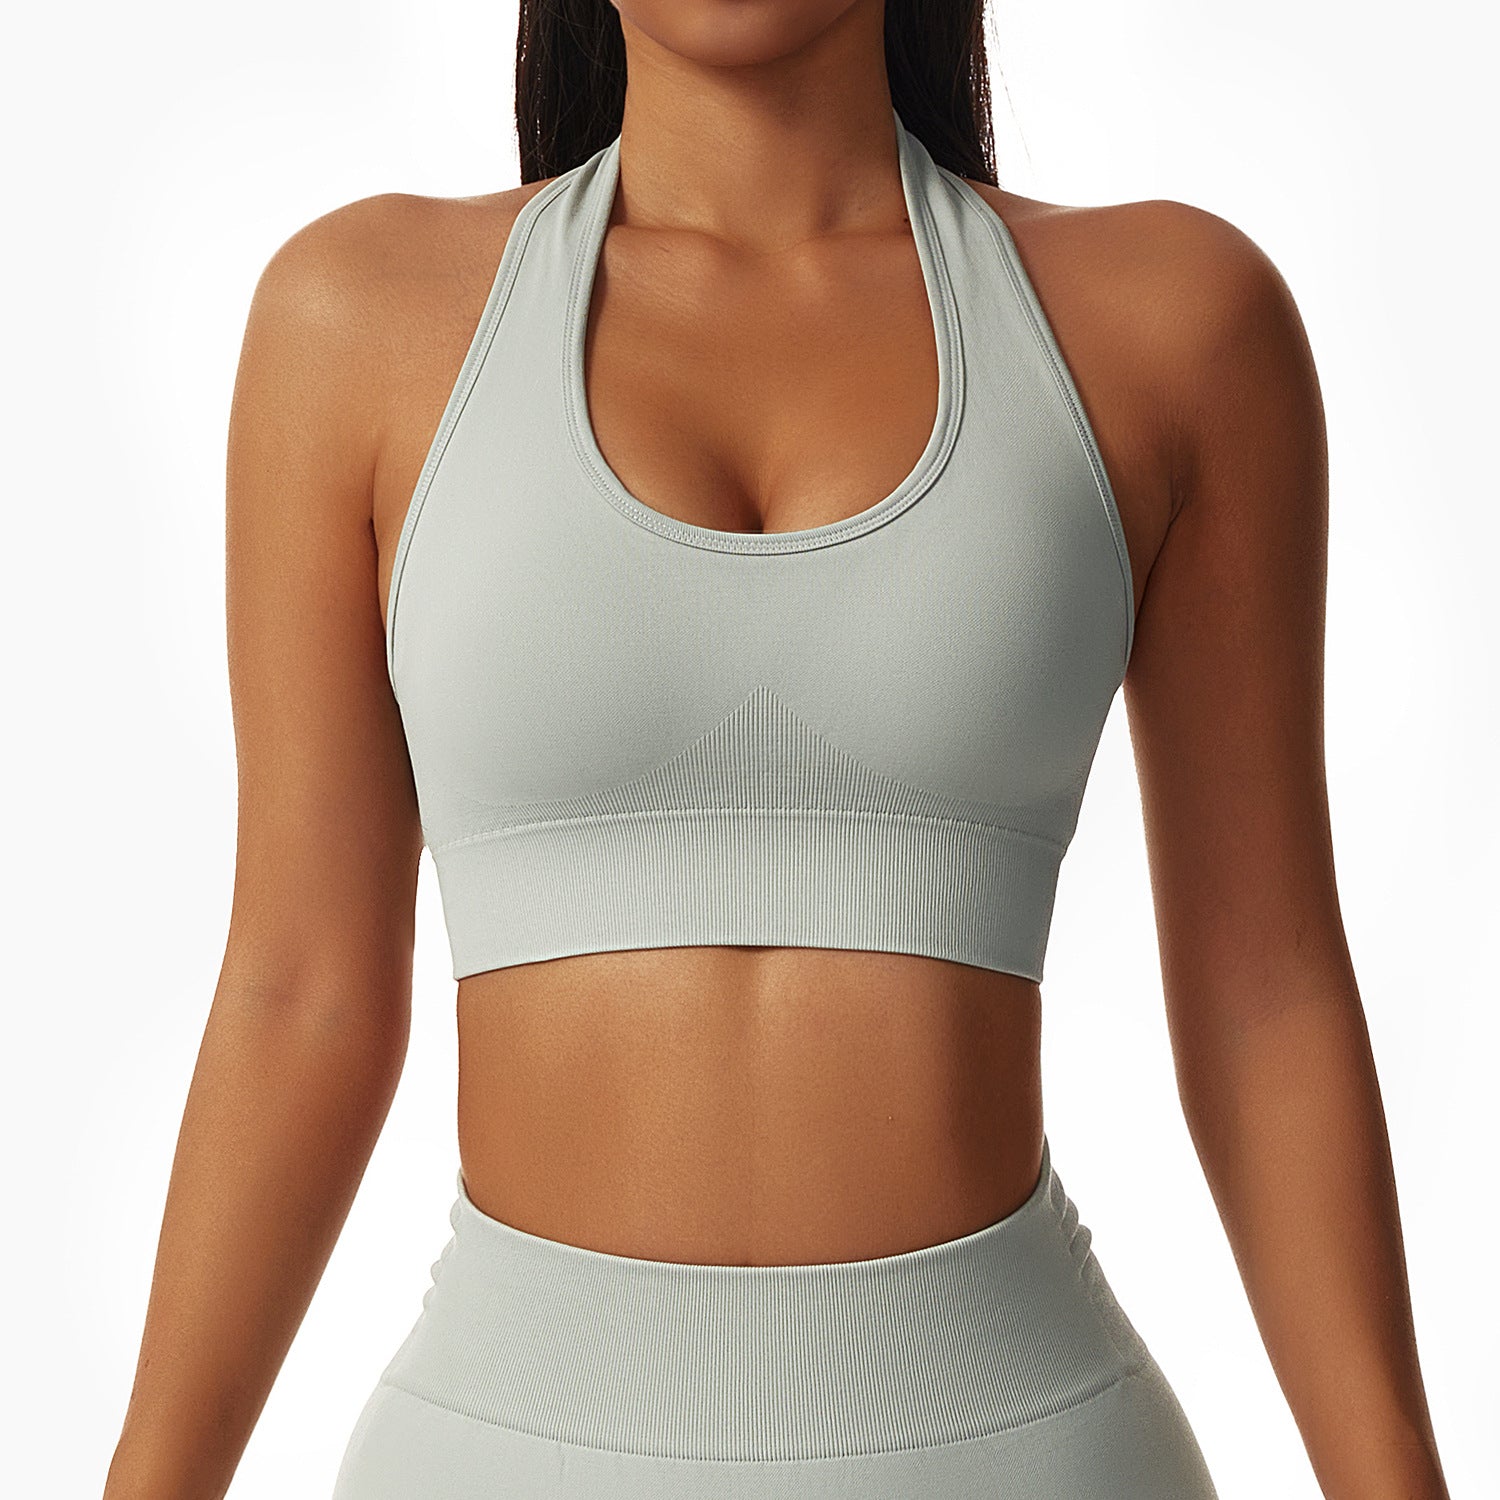 Seamless sexy workout bra